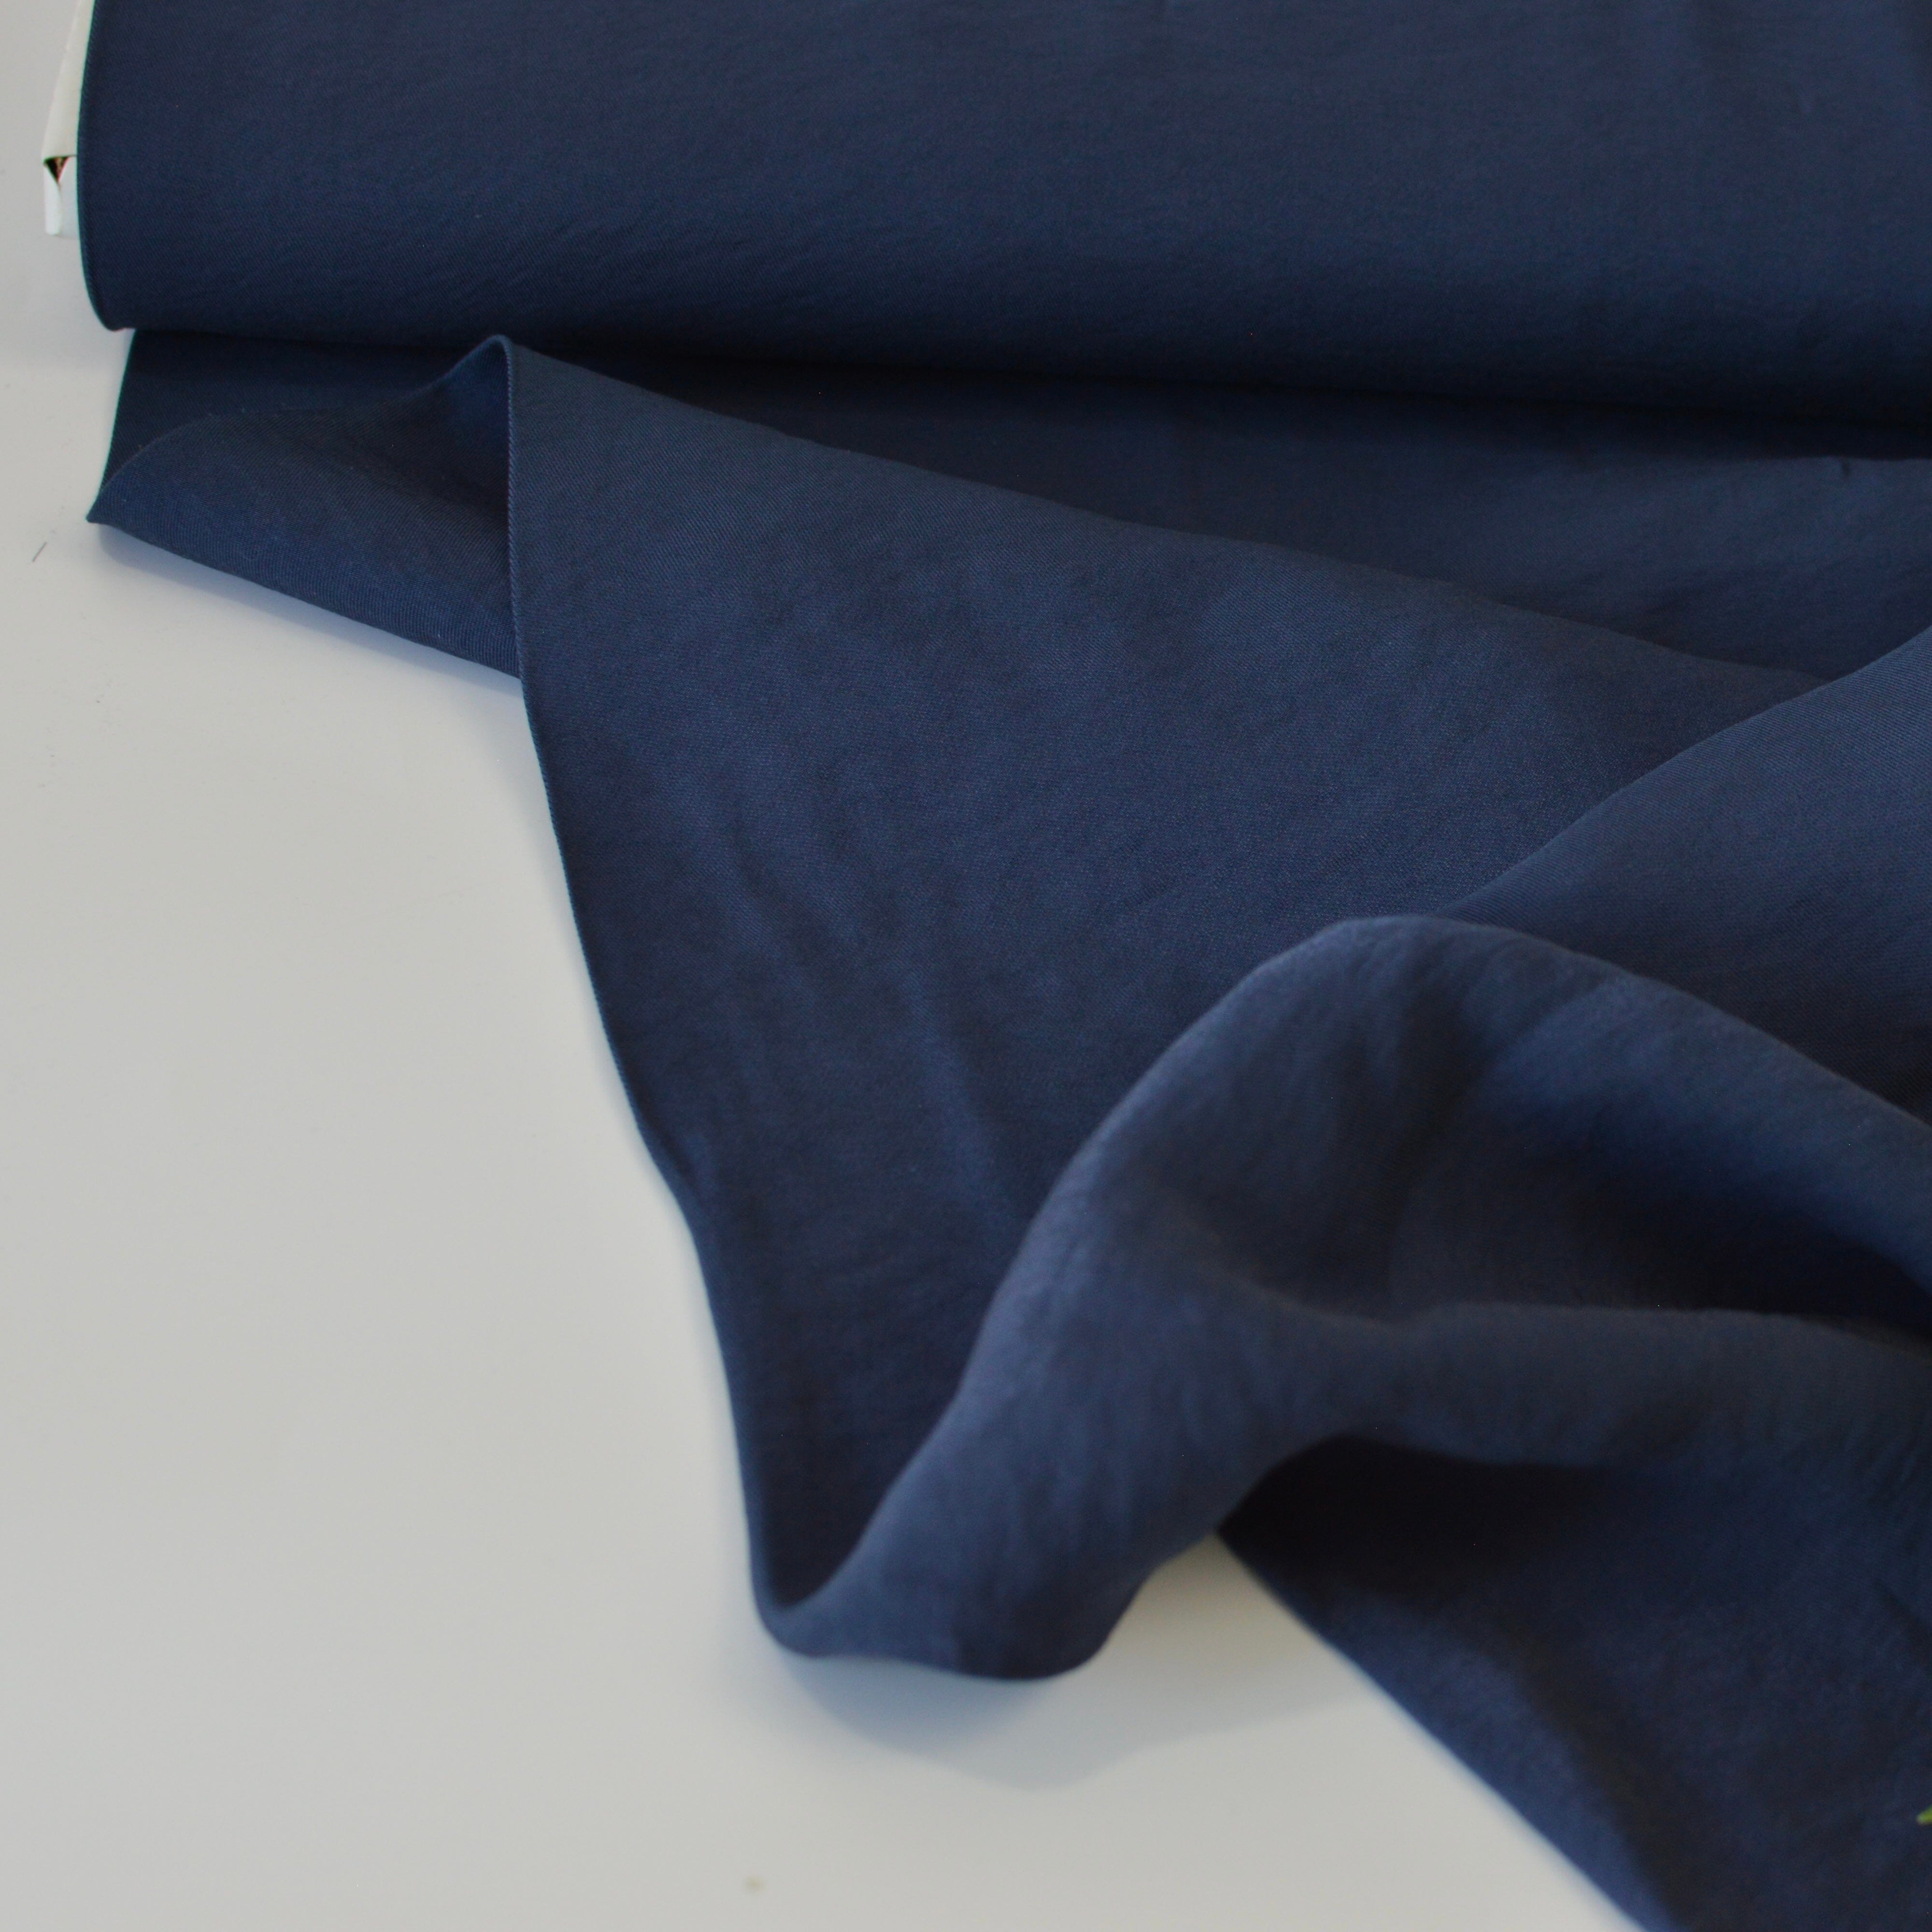 Viskose - shiny glow - navy blau schimmernd Fabric poshpinks